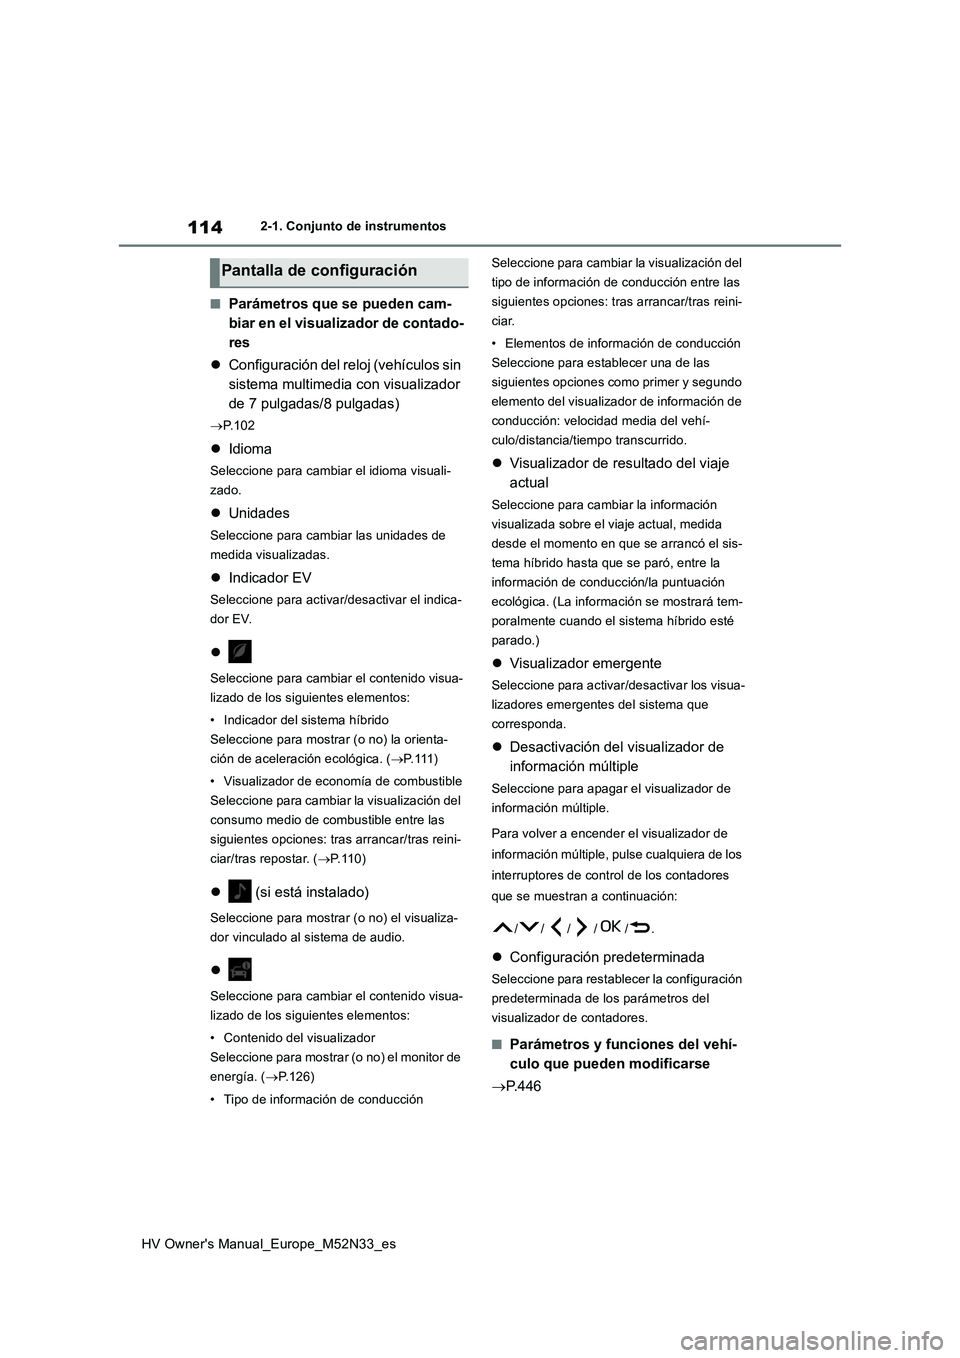 TOYOTA YARIS 2022  Manuale de Empleo (in Spanish) 114
HV Owner's Manual_Europe_M52N33_es
2-1. Conjunto de instrumentos
■Parámetros que se pueden cam- 
biar en el visualizador de contado-
res 
 Configuración del reloj (vehículos sin  
sist